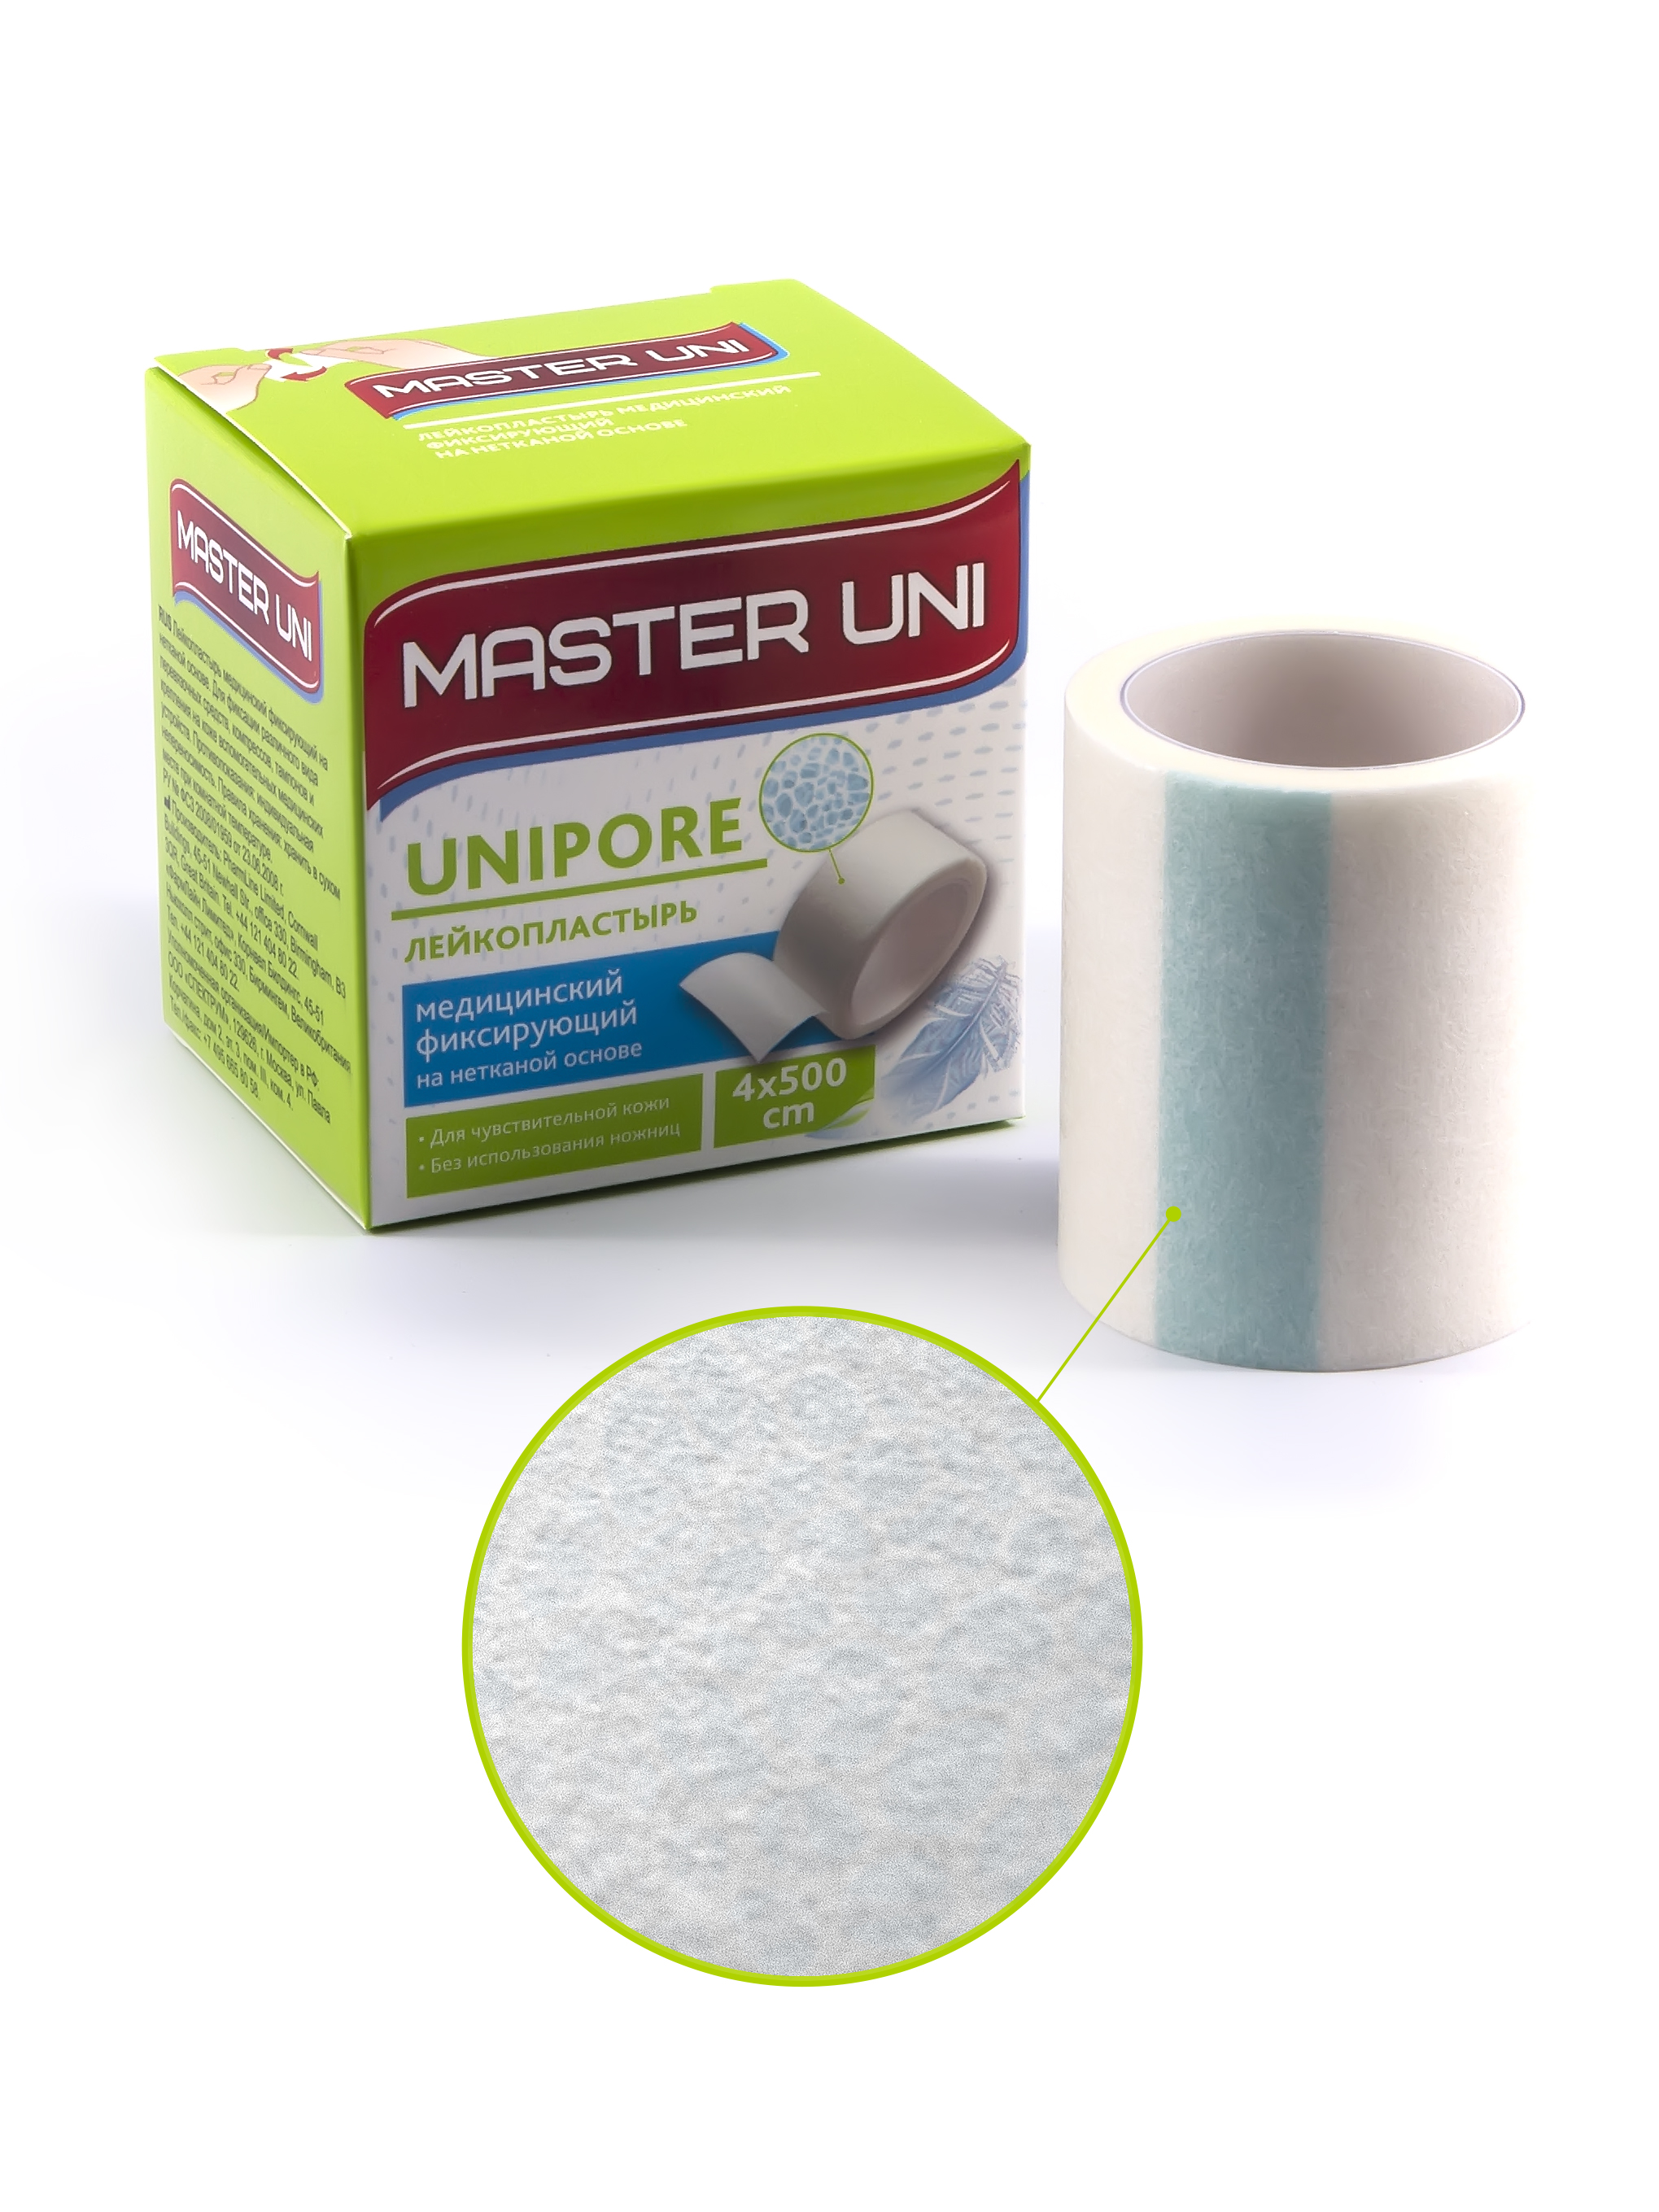 Купить MASTER UNI UNIPORE Лейкопластырь 4 х 500 см на нетканой основе, Пластырь Master Uni Unipore фиксирующий на нетканой основе 4 х 500 см